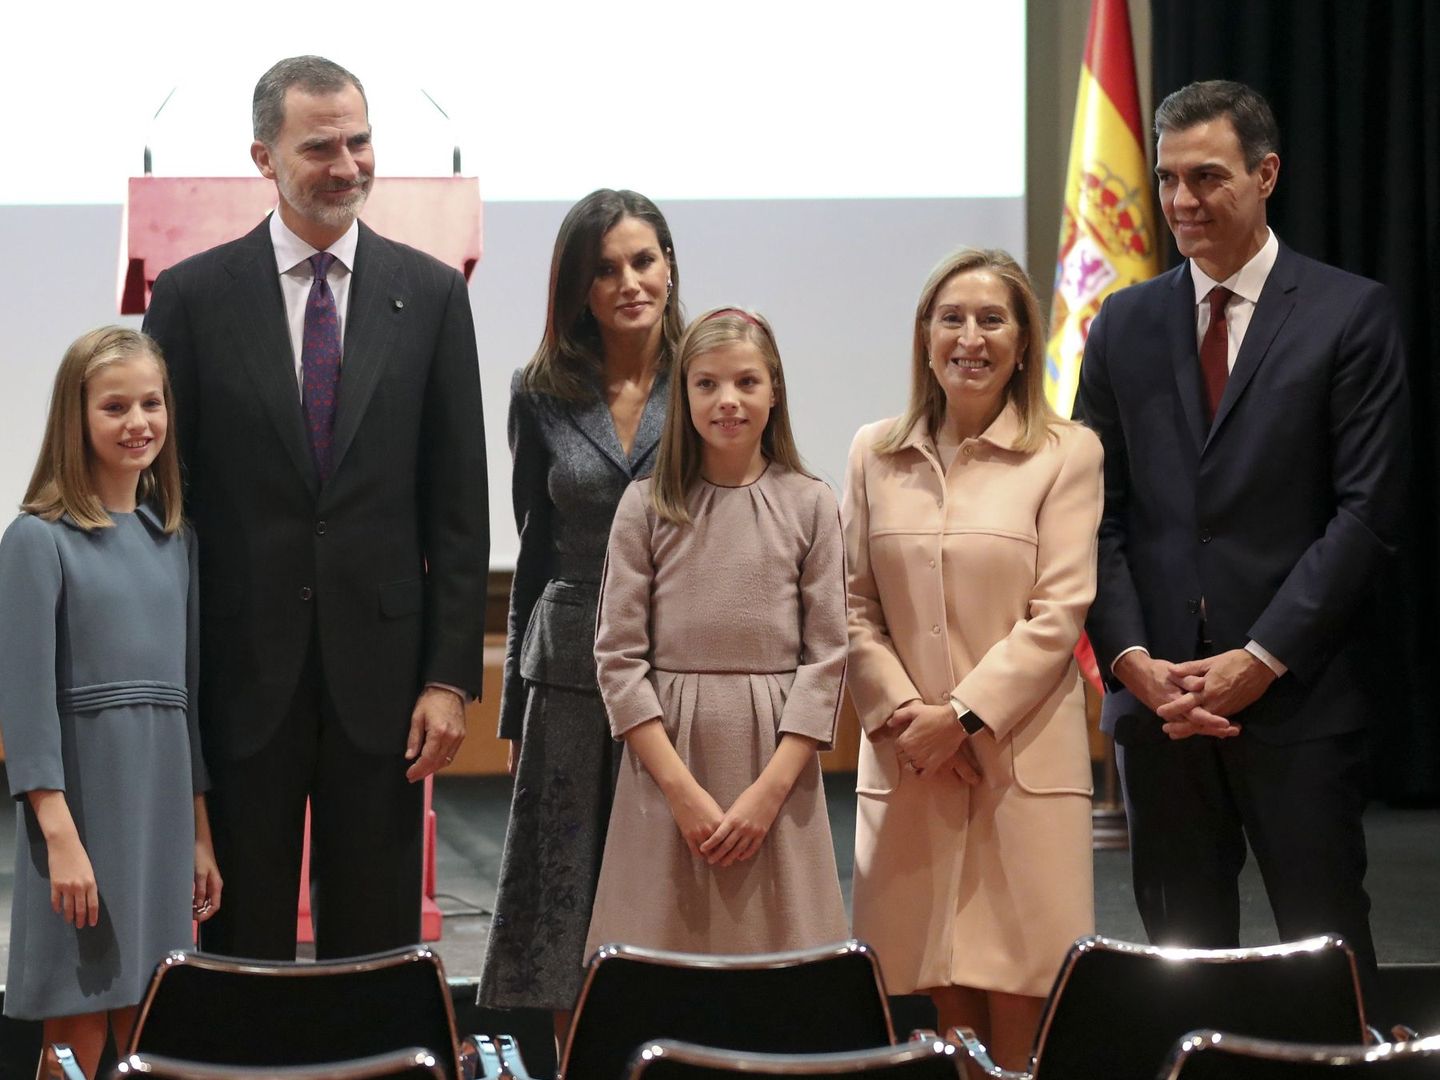 De izquierda a derecha: Leonor, el rey Felipe, la reina Letizia, la infanta Sofía, Ana Pastor y Pedro Sánchez. (EFE)